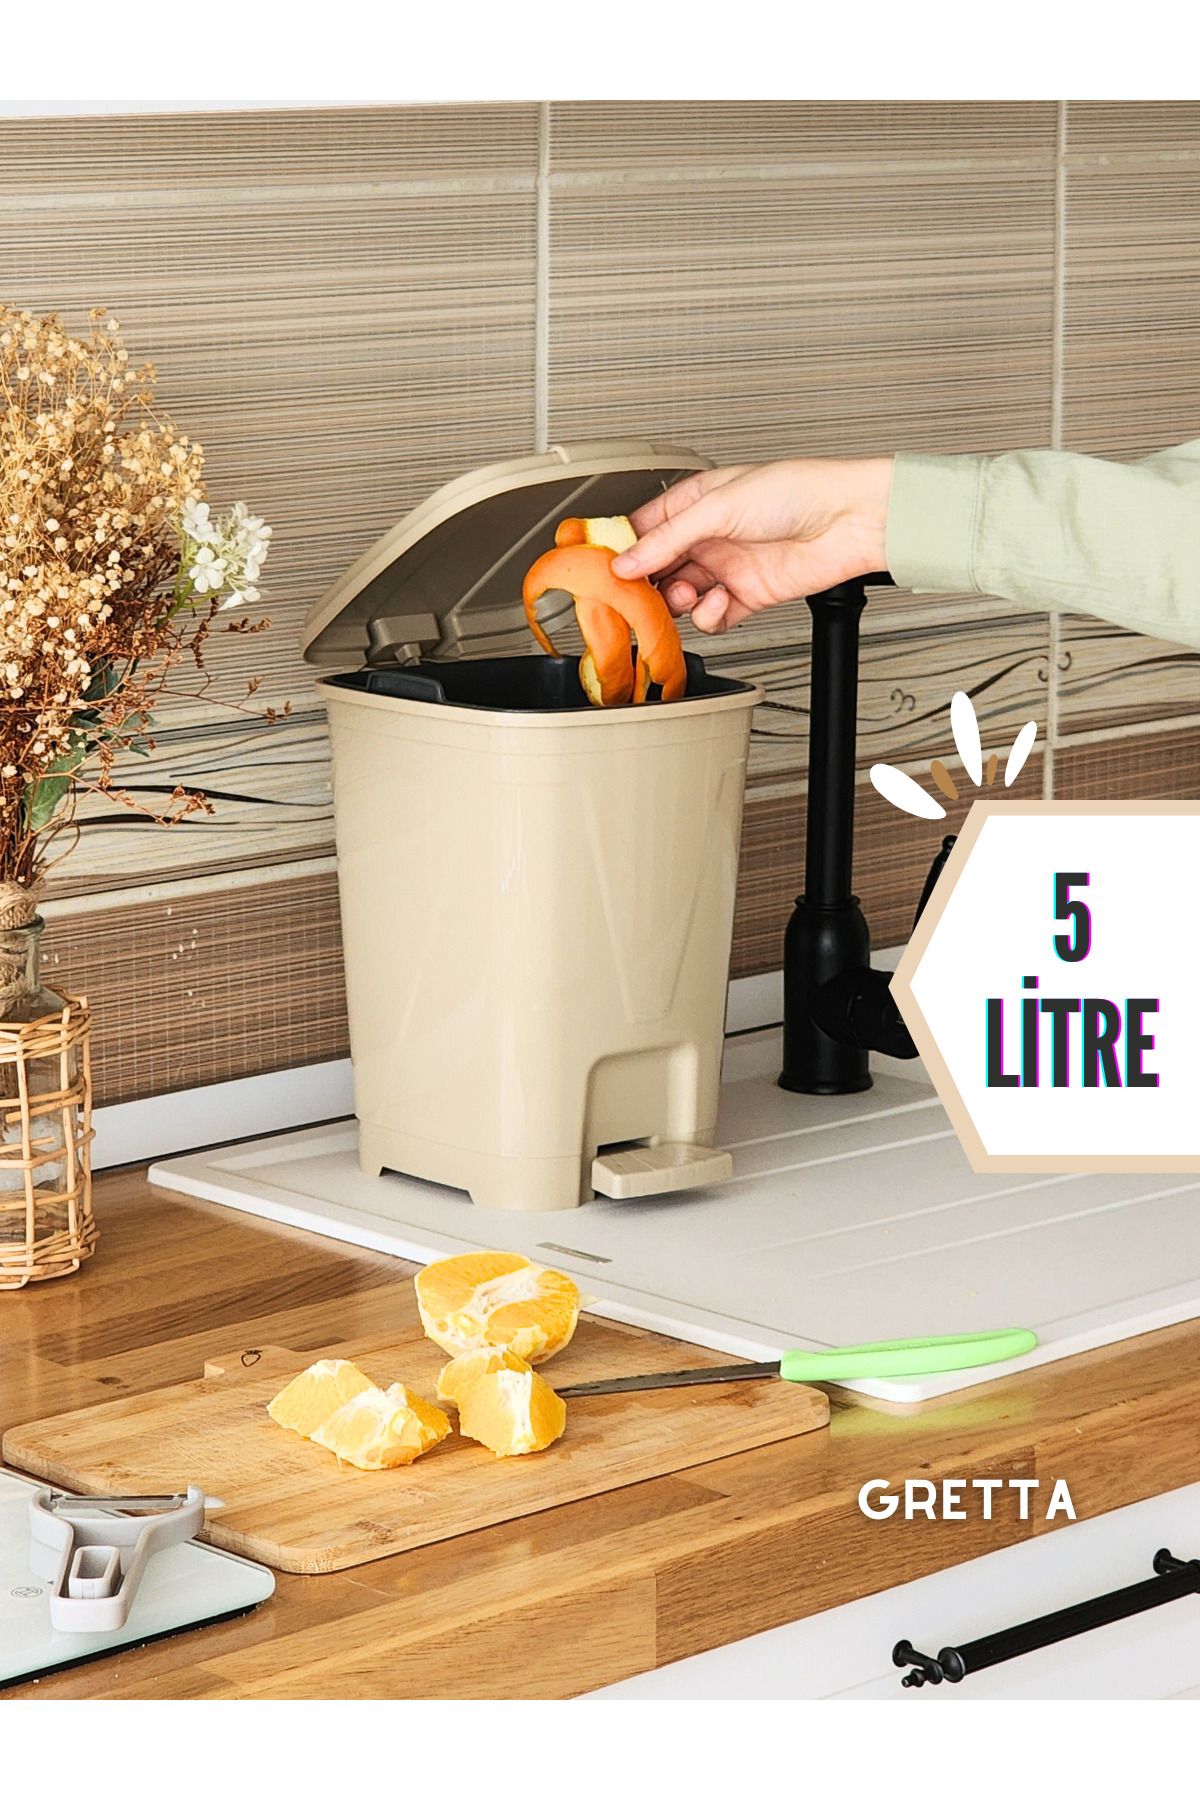 Gretta 5 Litre Bej Kare Pedallı Çöp Kovası - Mutfak Tezgah Üstü, Banyo Ve Ofis Için Çöp Kovası